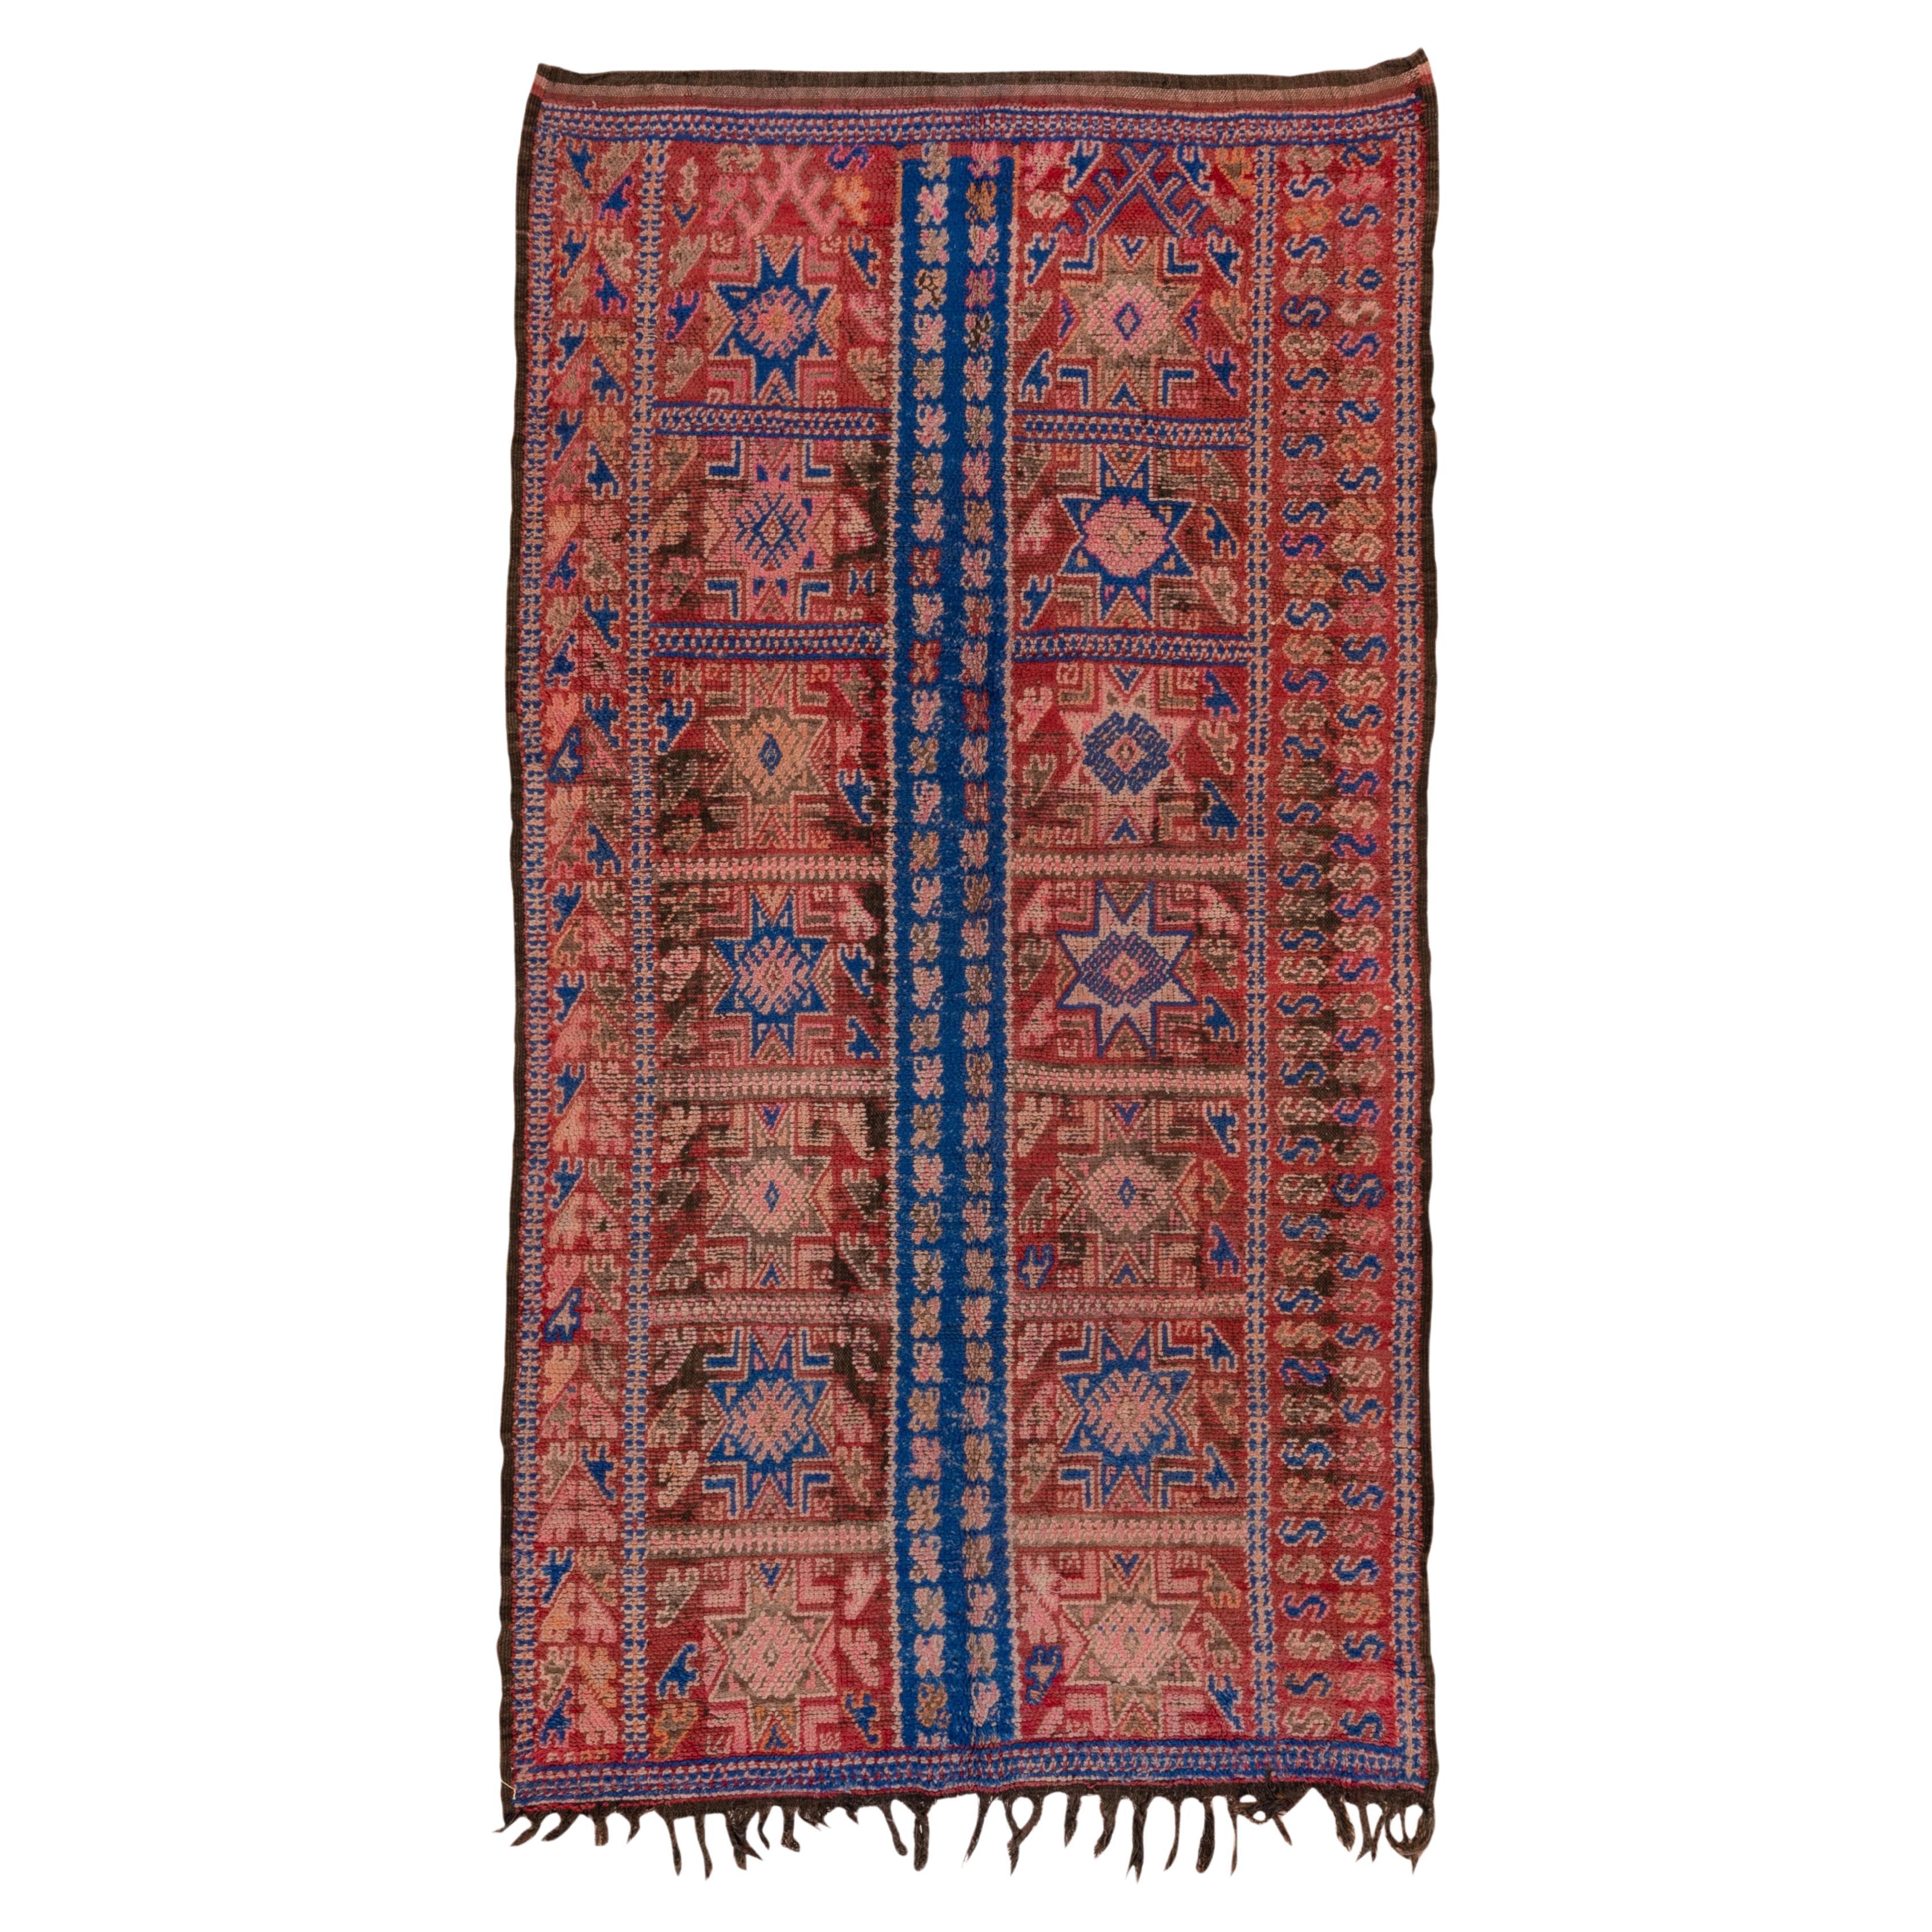 Marokkanisches Allover-Medaillon mit wiederkehrendem Muster, königsblau und sattem Rot